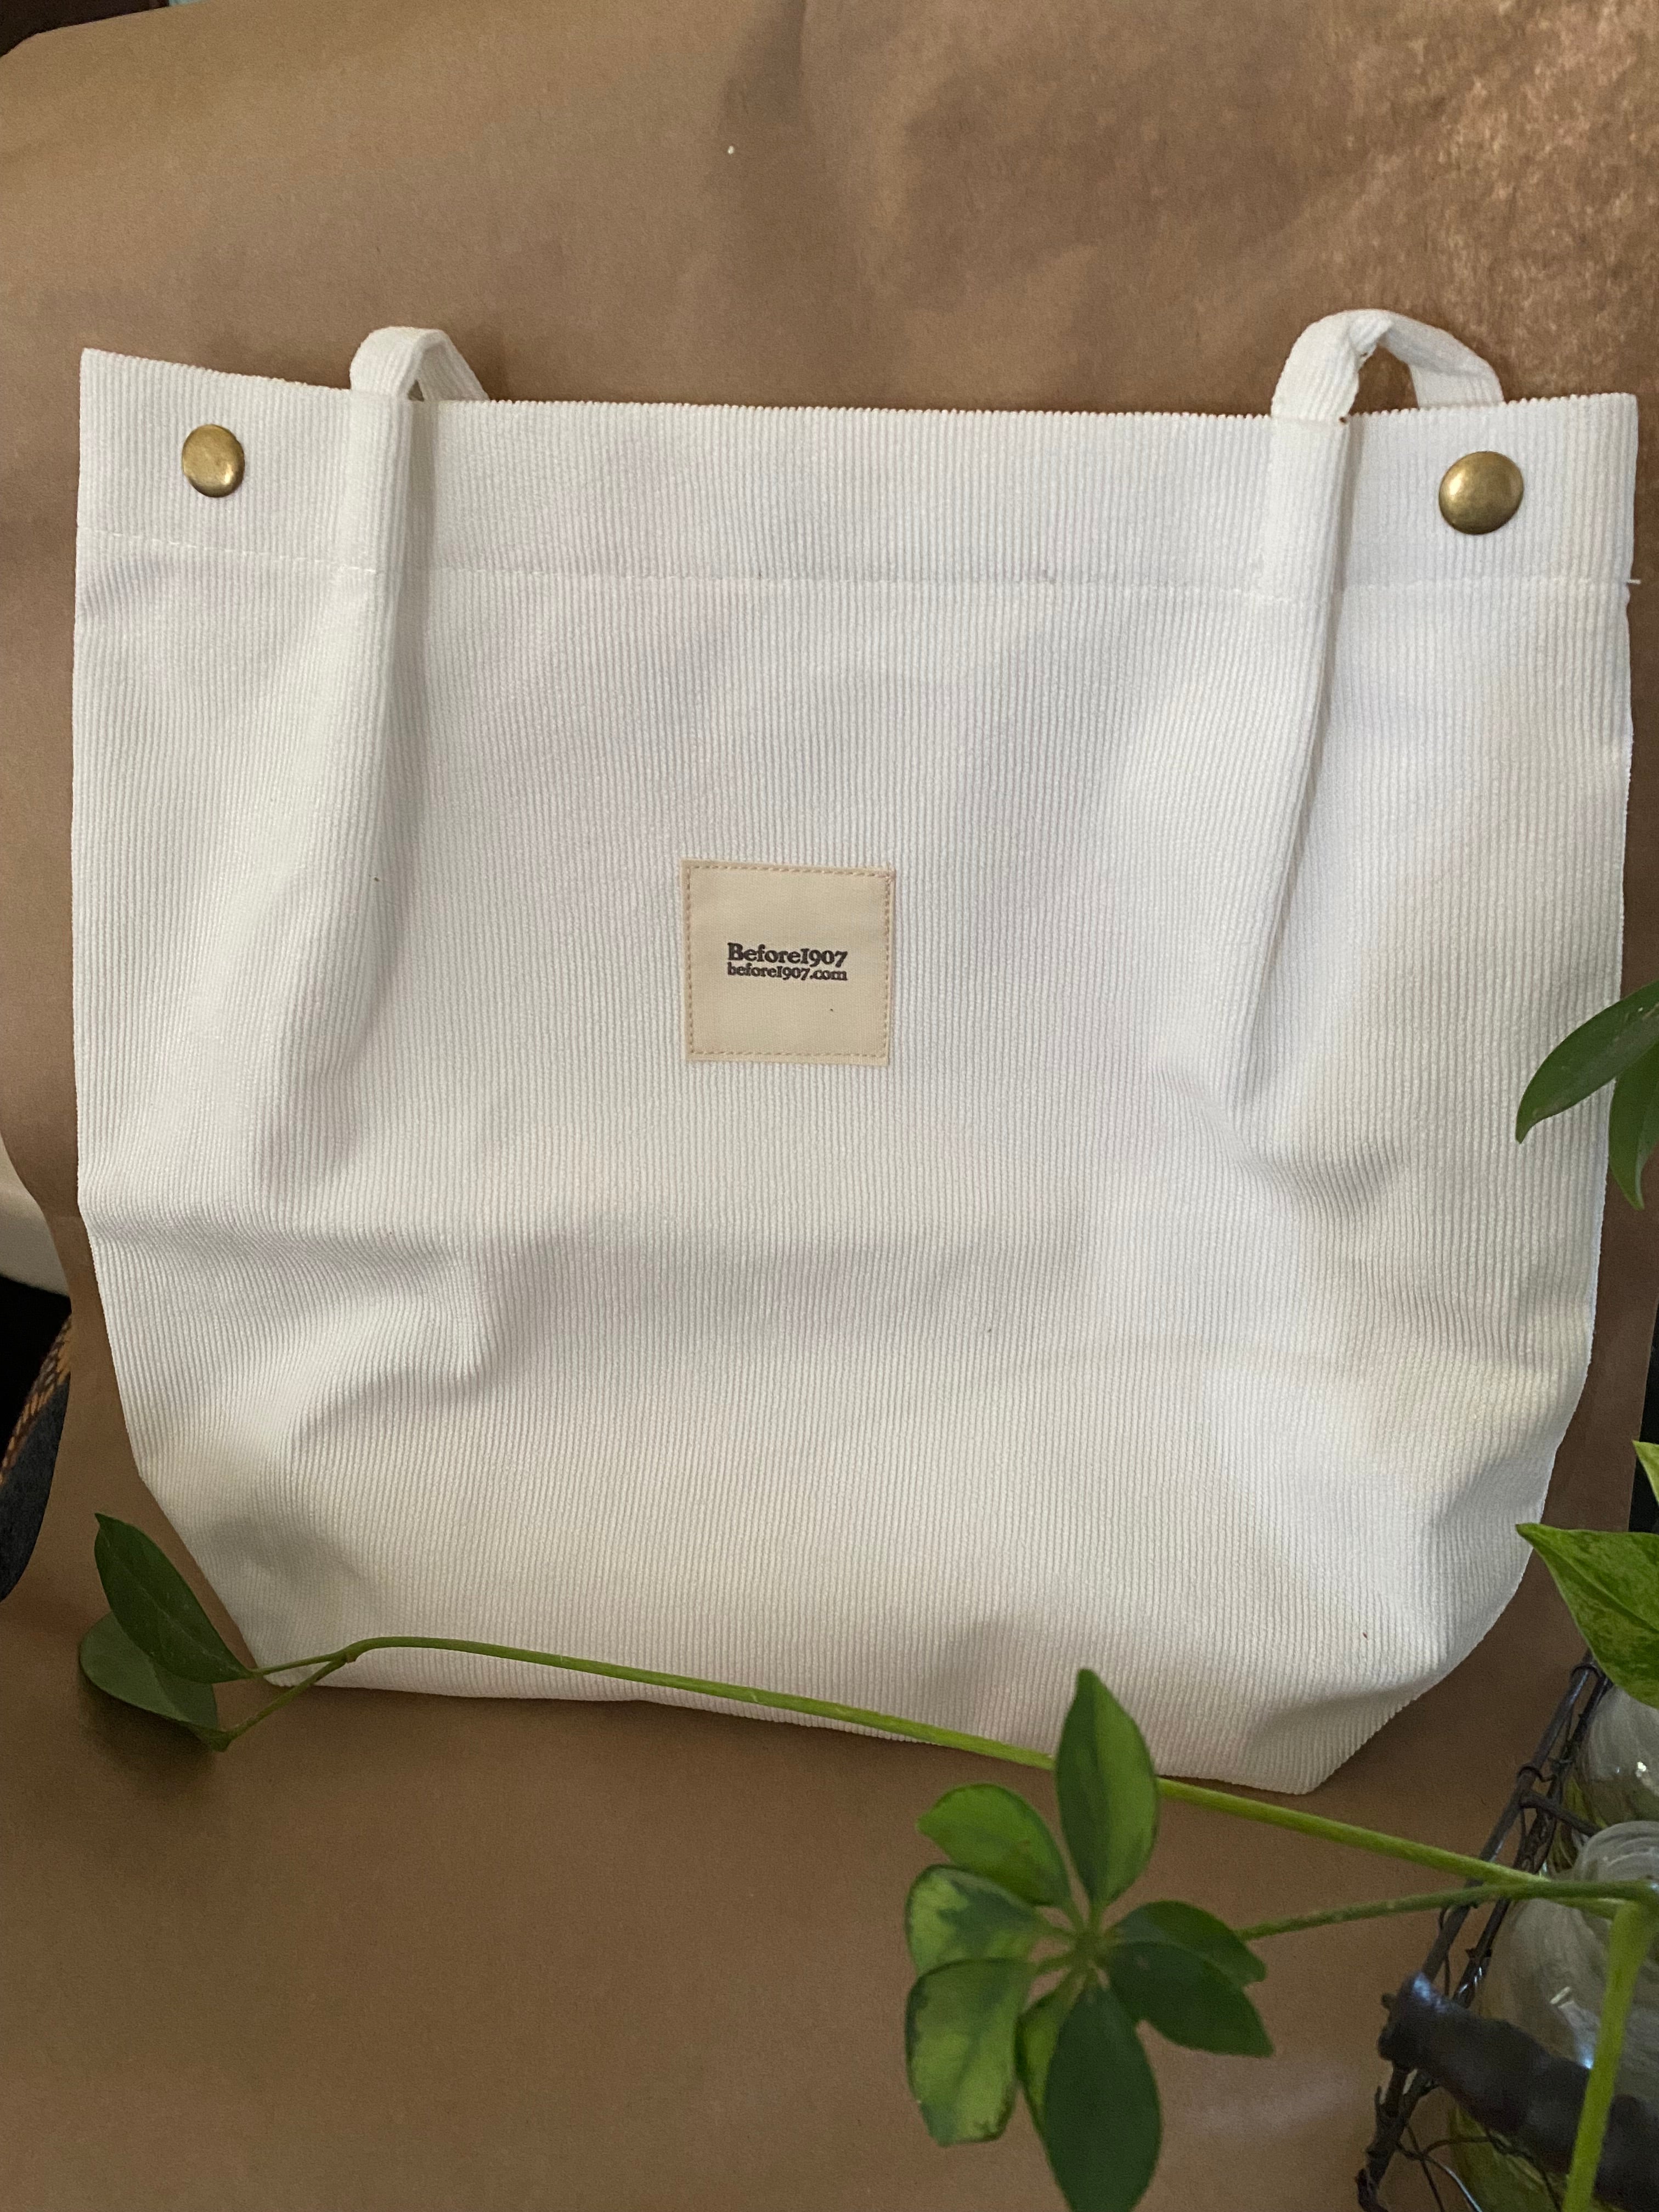 DESIGNER BAG INDEX: CÉLINE | Celine bag, Fashion bags, Leather